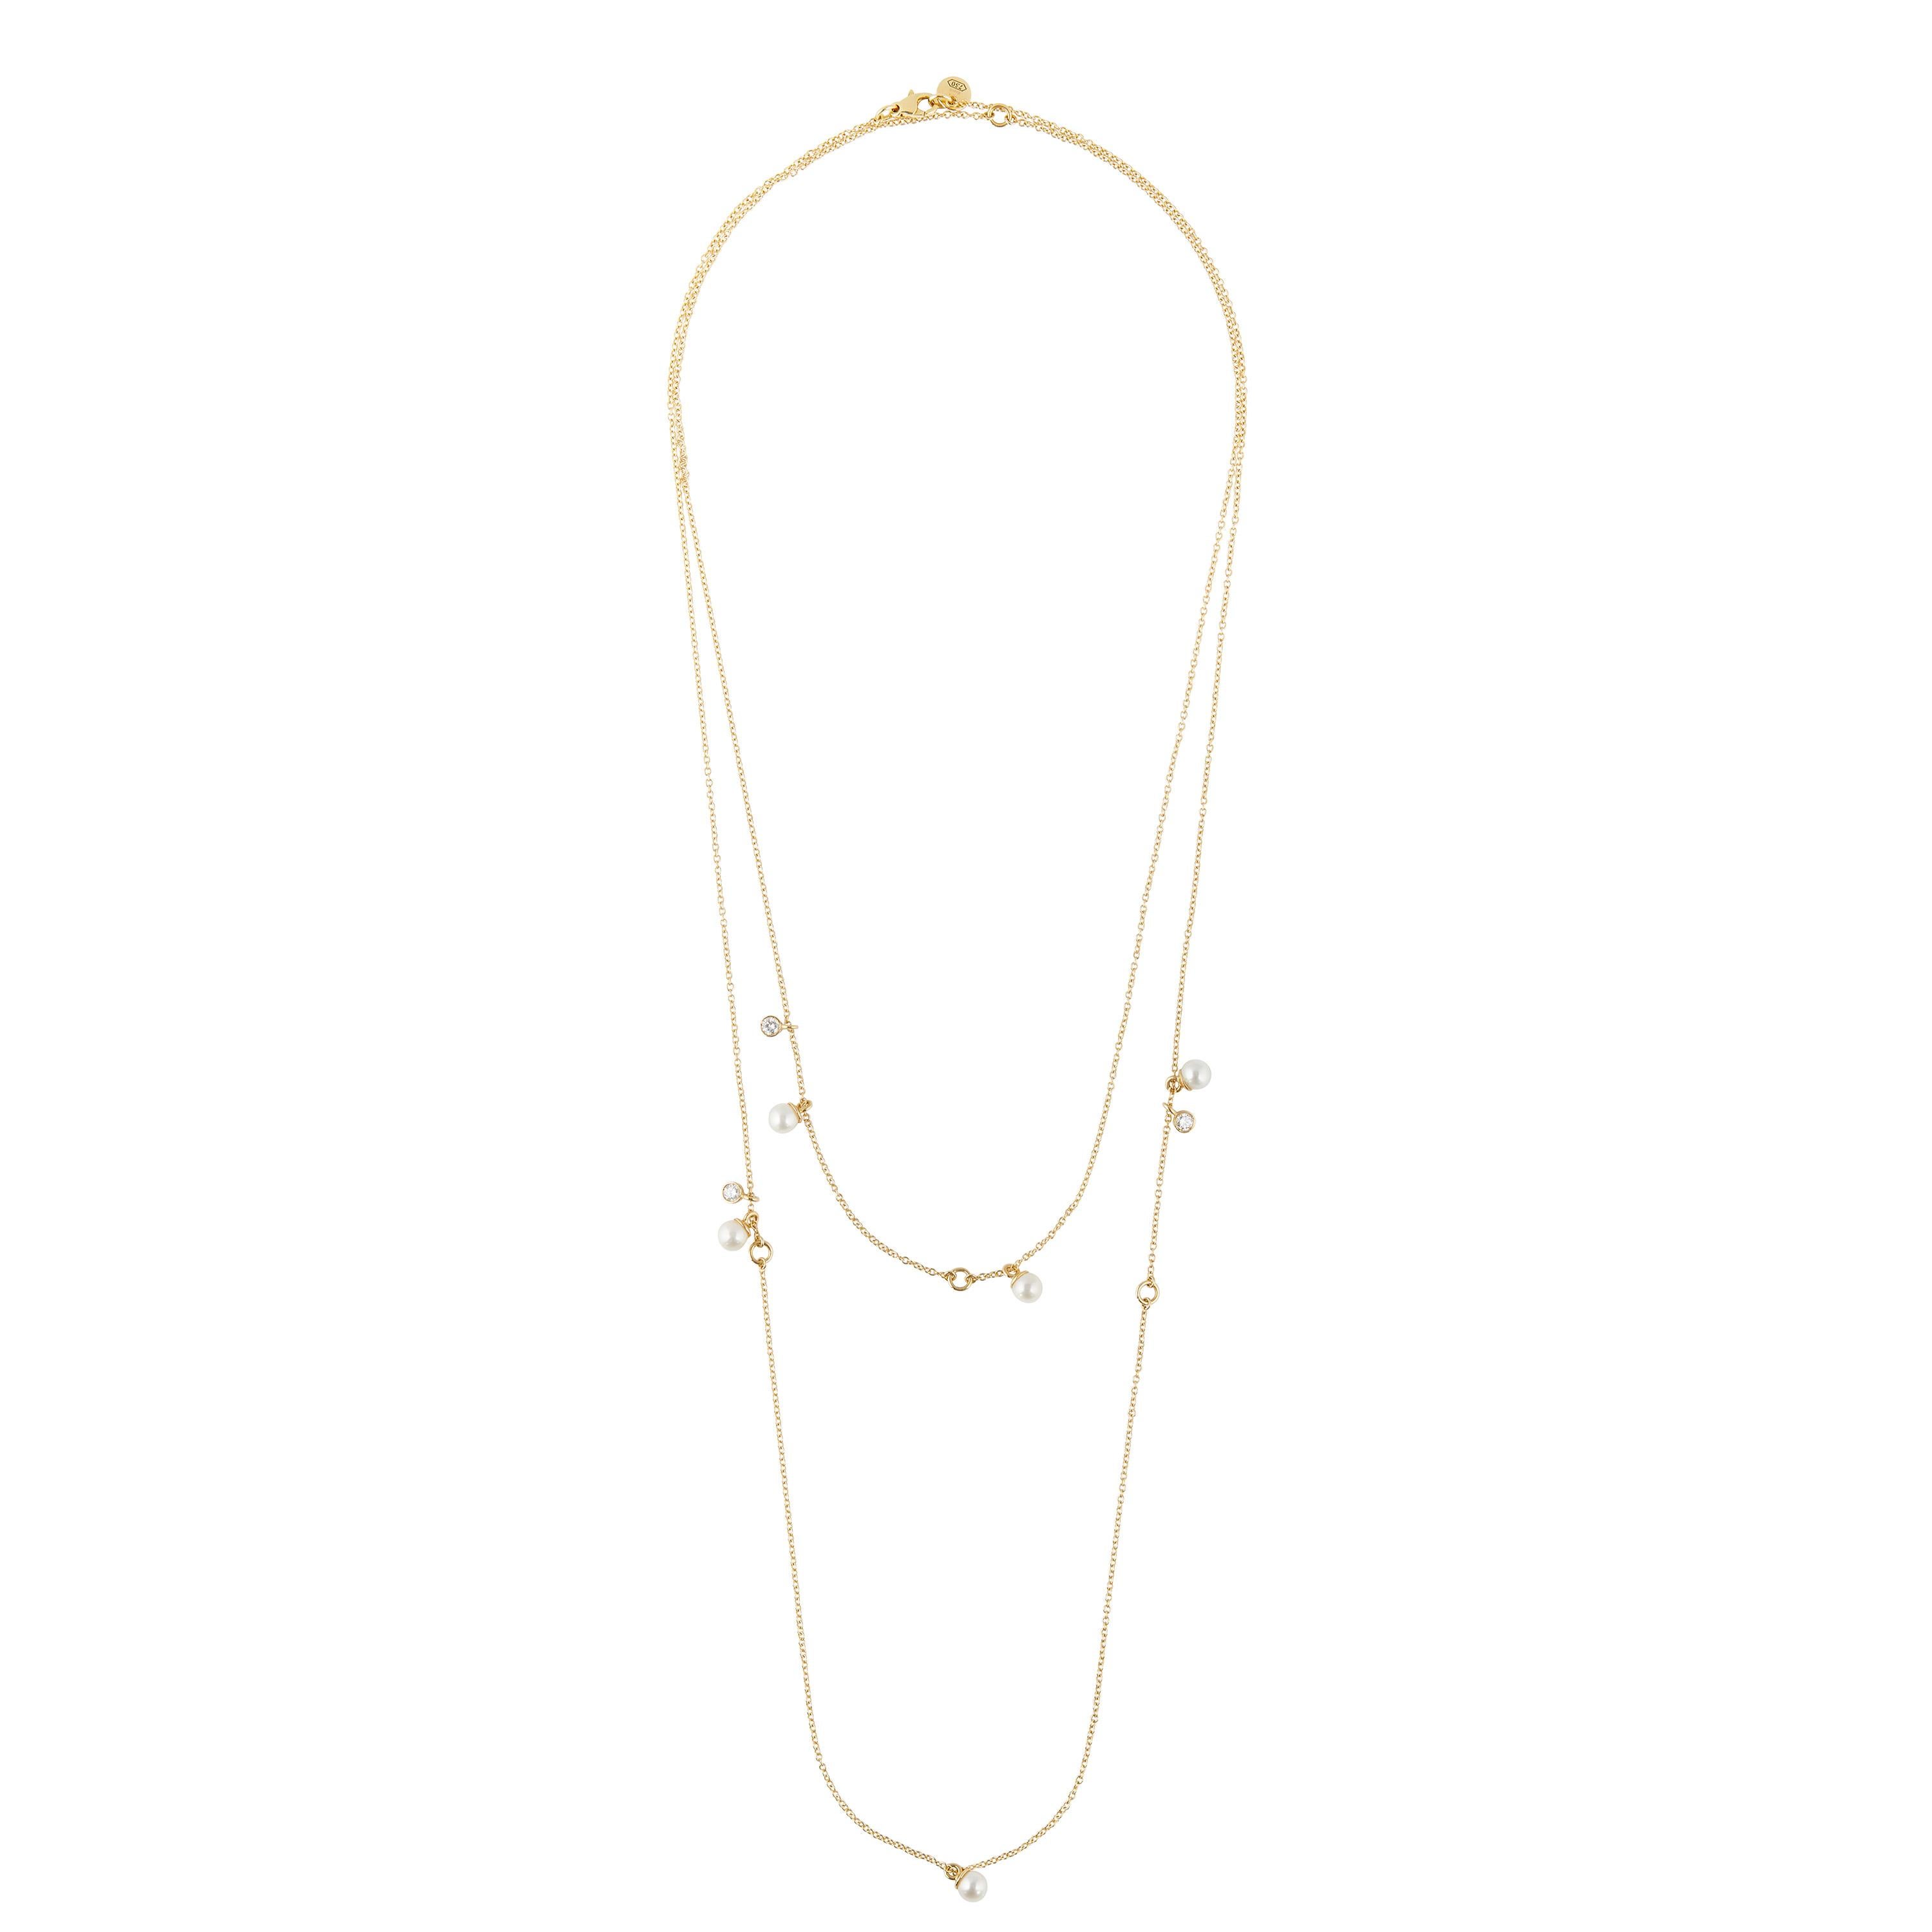 Libre comme l'Or est une longue chaîne en or jaune 18kt, diamant et perle.
Libre-LIBRE en français de porter ce bijou polyvalent au gré de ses envies et de ses fantaisies. GRATUIT comme les diamants et les perles, ornés de minuscules anneaux d'or,